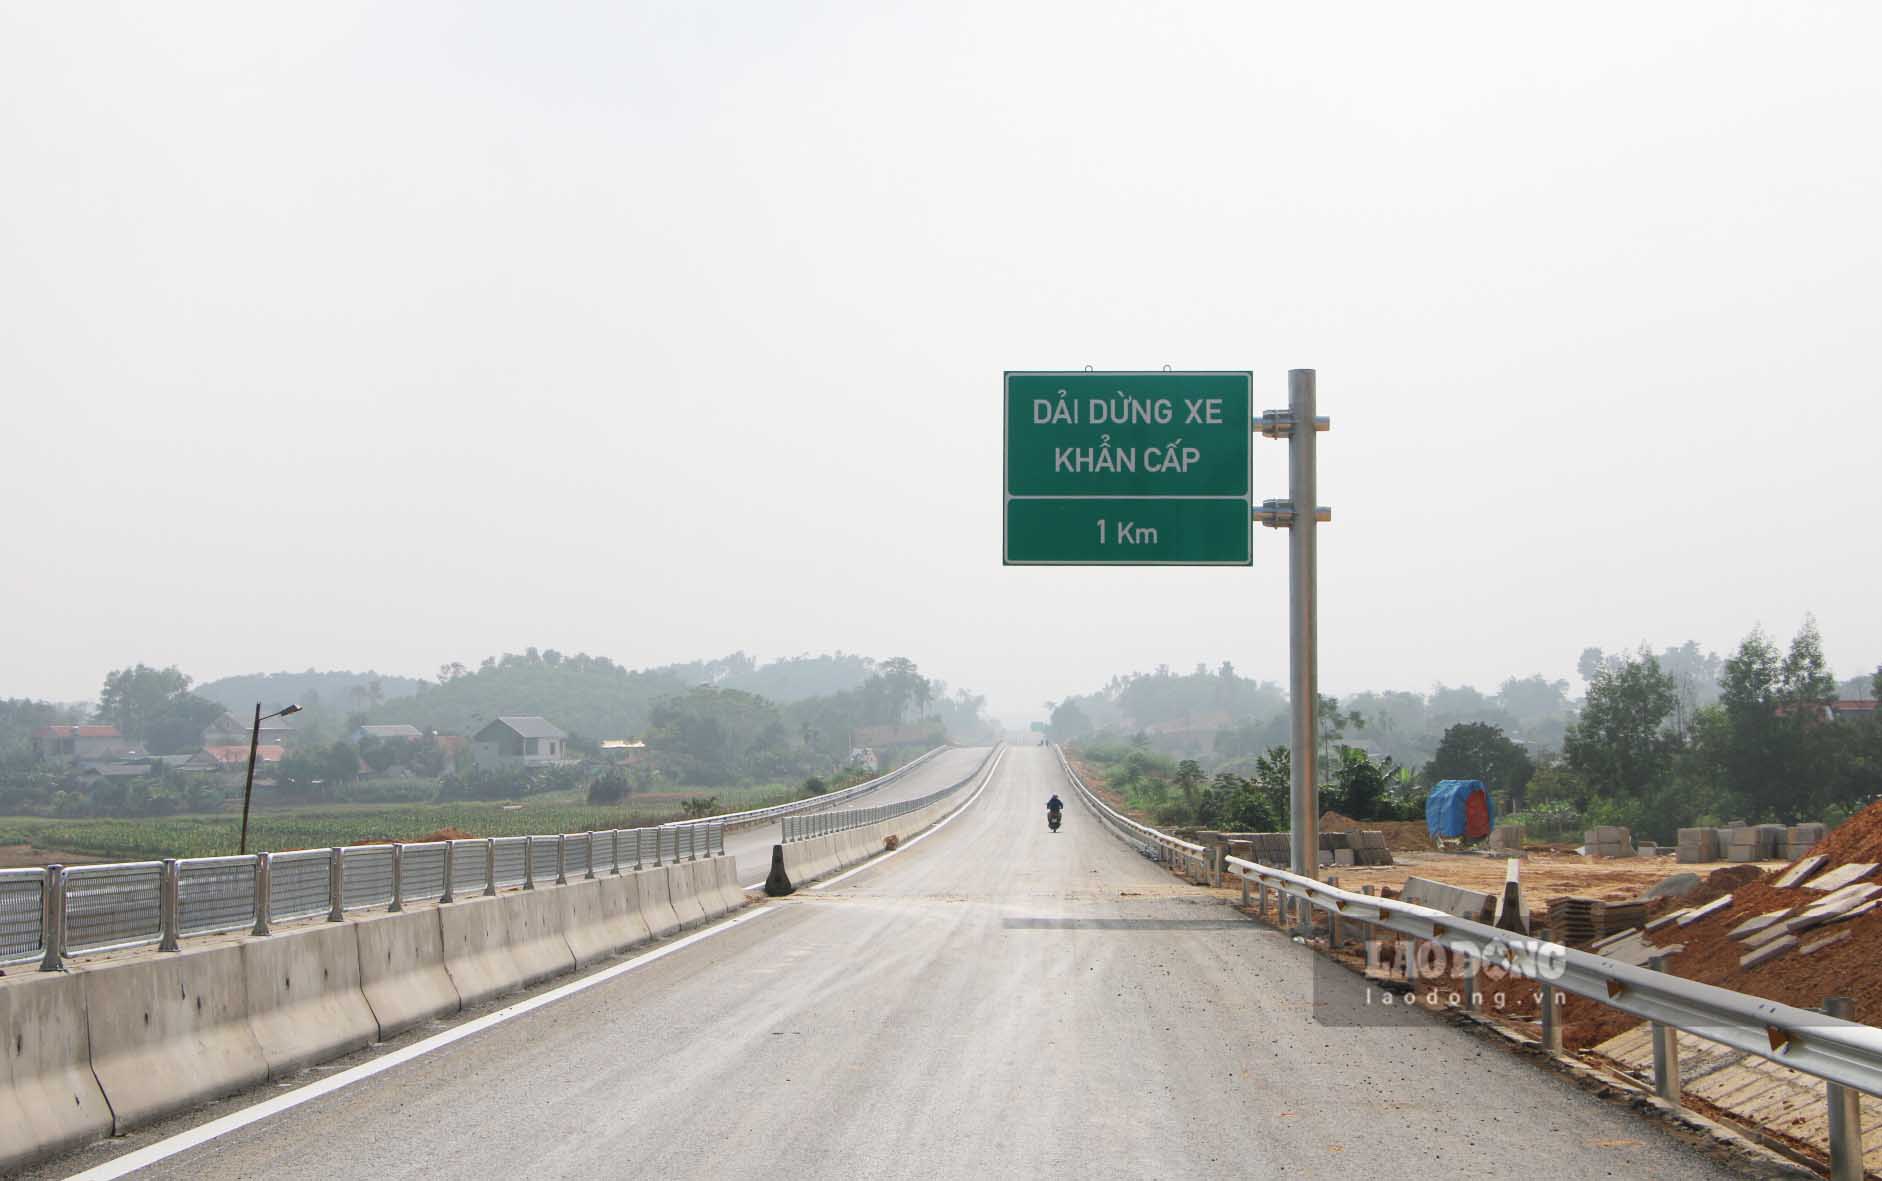 Cao tốc Tuyên Quang - Phú Thọ không có làn dừng khẩn cấp liên tục và được bố trí các dải dừng khẩn cấp trên toàn tuyến. Ảnh: Nguyễn Tùng.